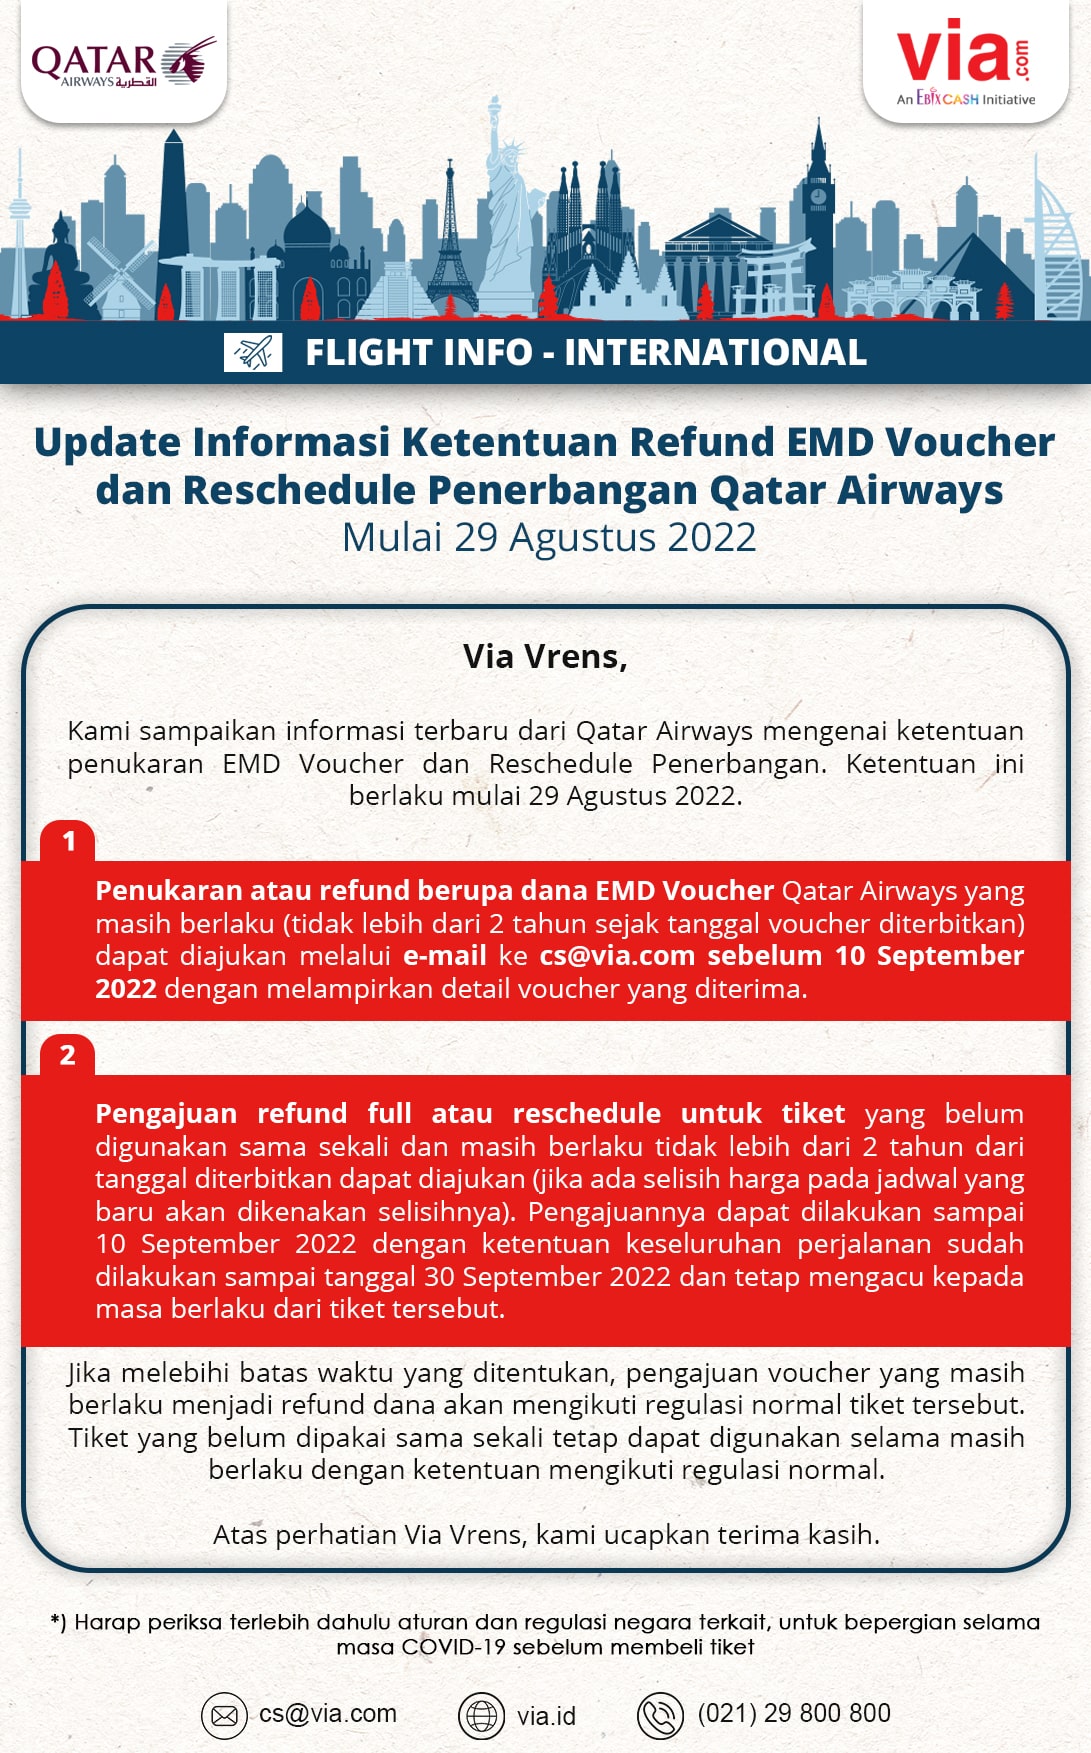 Update Informasi Ketentuan Refund EMD Voucher Qatar Airways